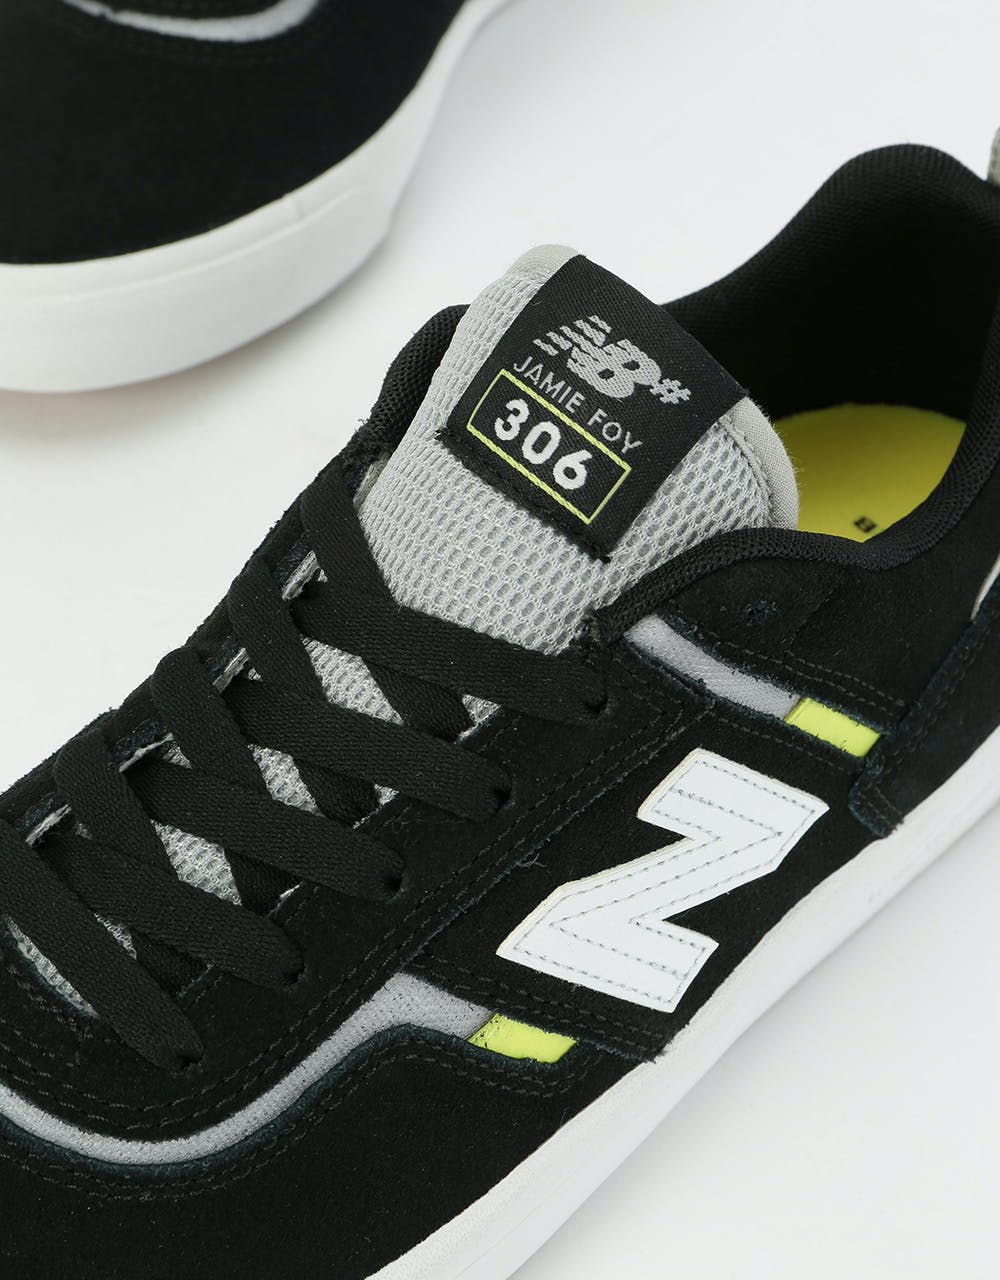 New Balance Numeric 306 Foy Skate Shoes - Black/White